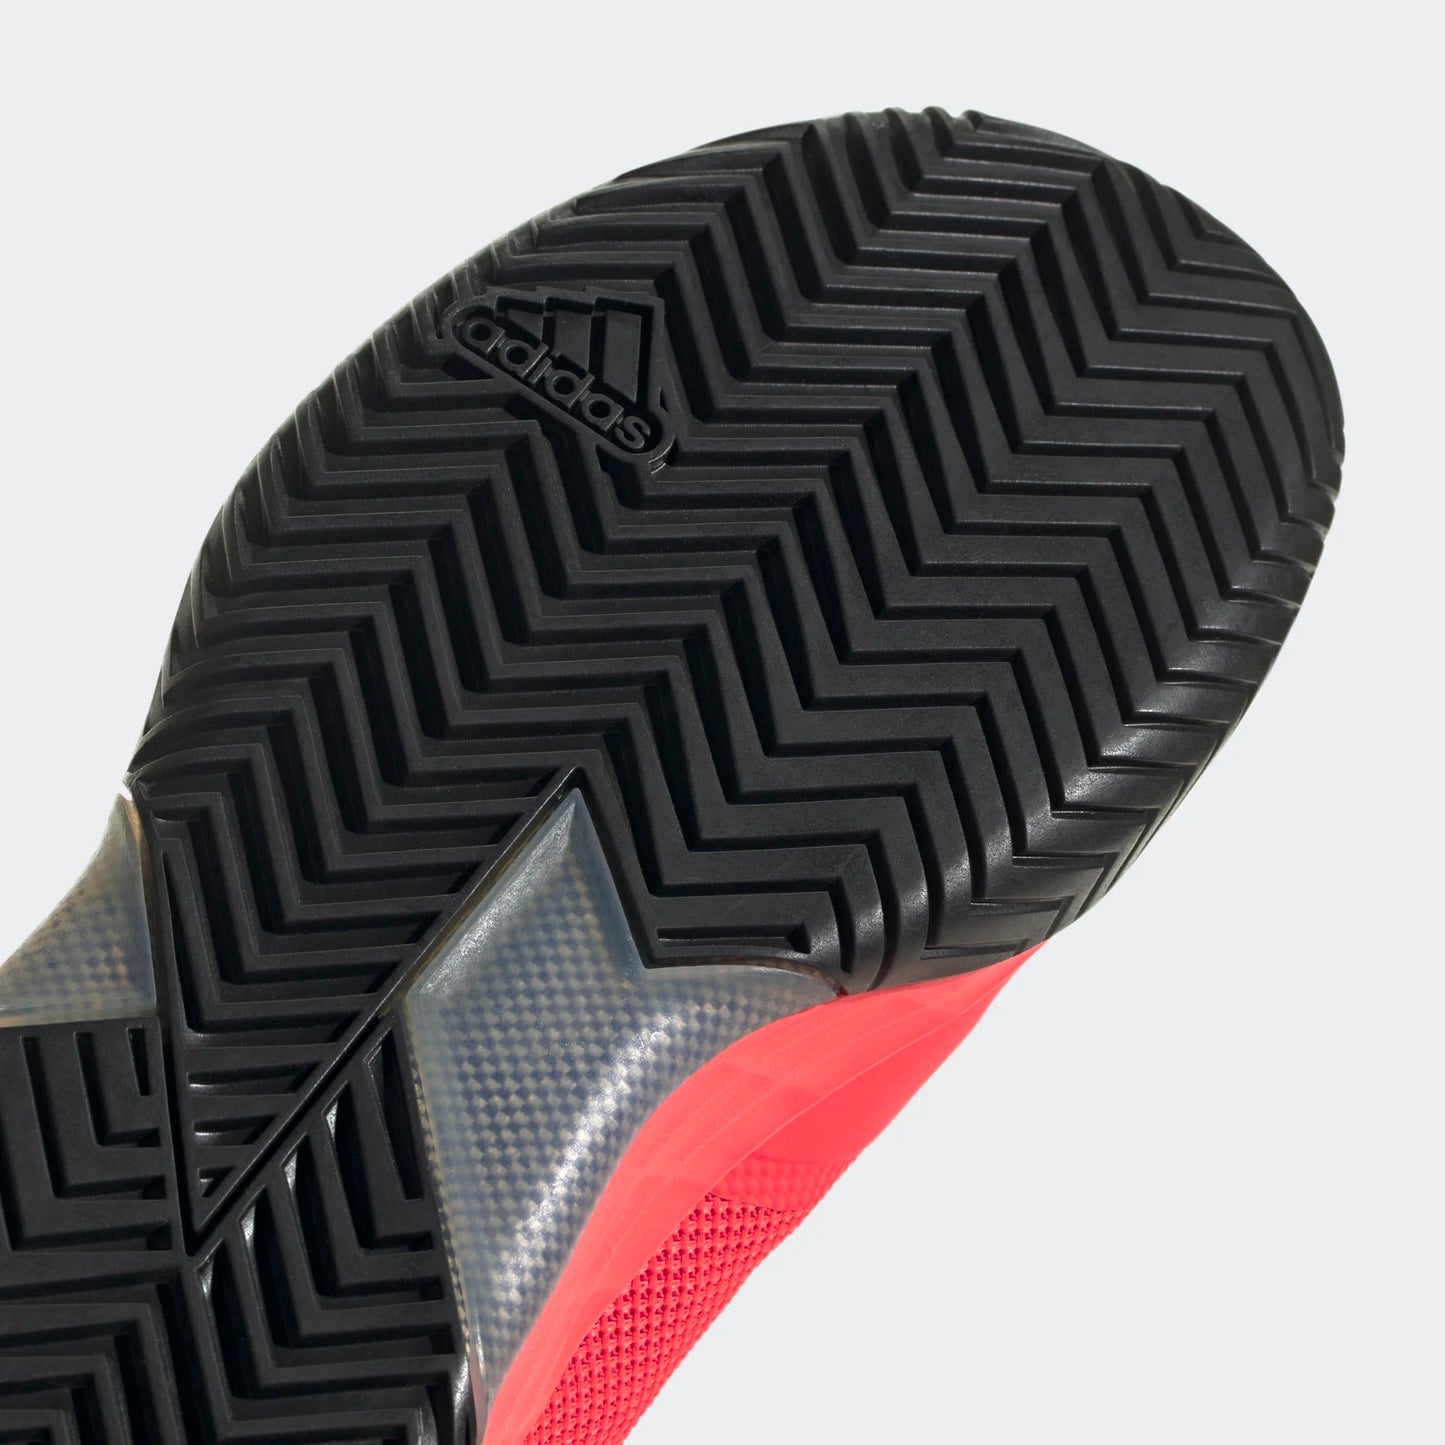 adidas Adizero Ubersonic 4 men tennis shoes - Red/Silver/Blue HQ8379